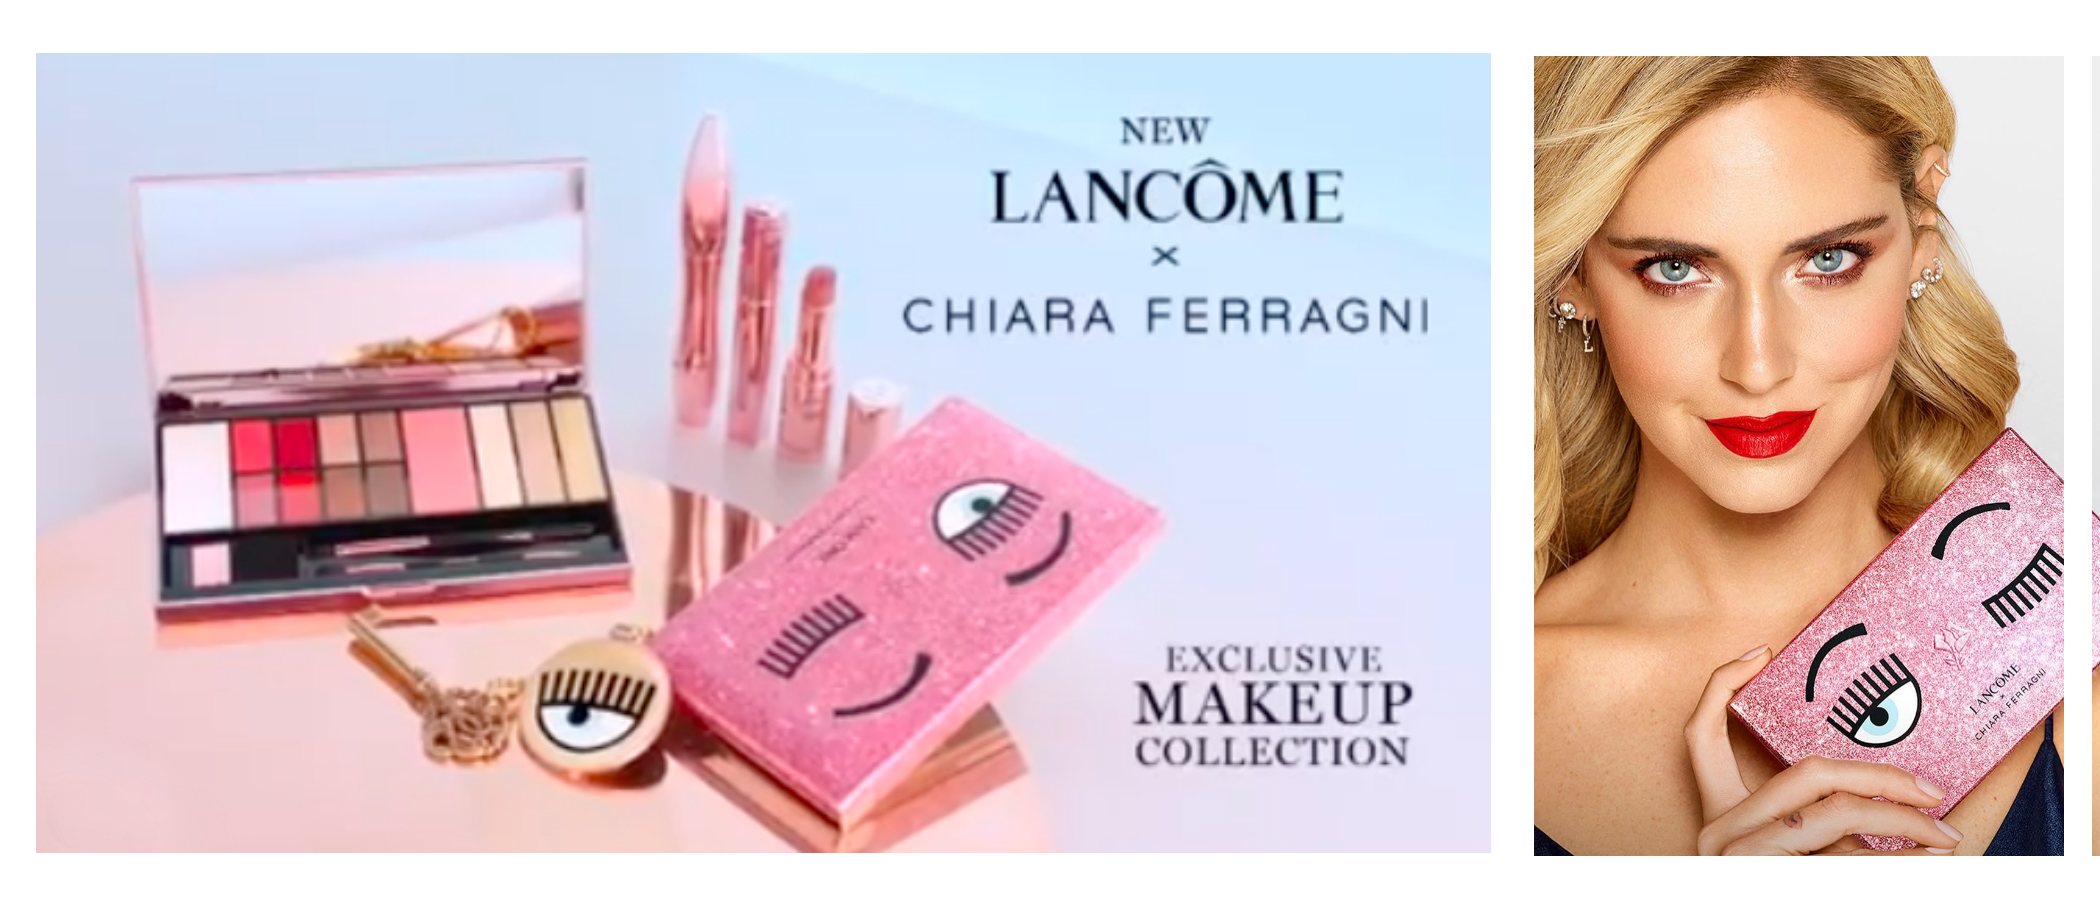 Chiara Ferragni lanza su primera colección de maquillaje en colaboración con Lancôme